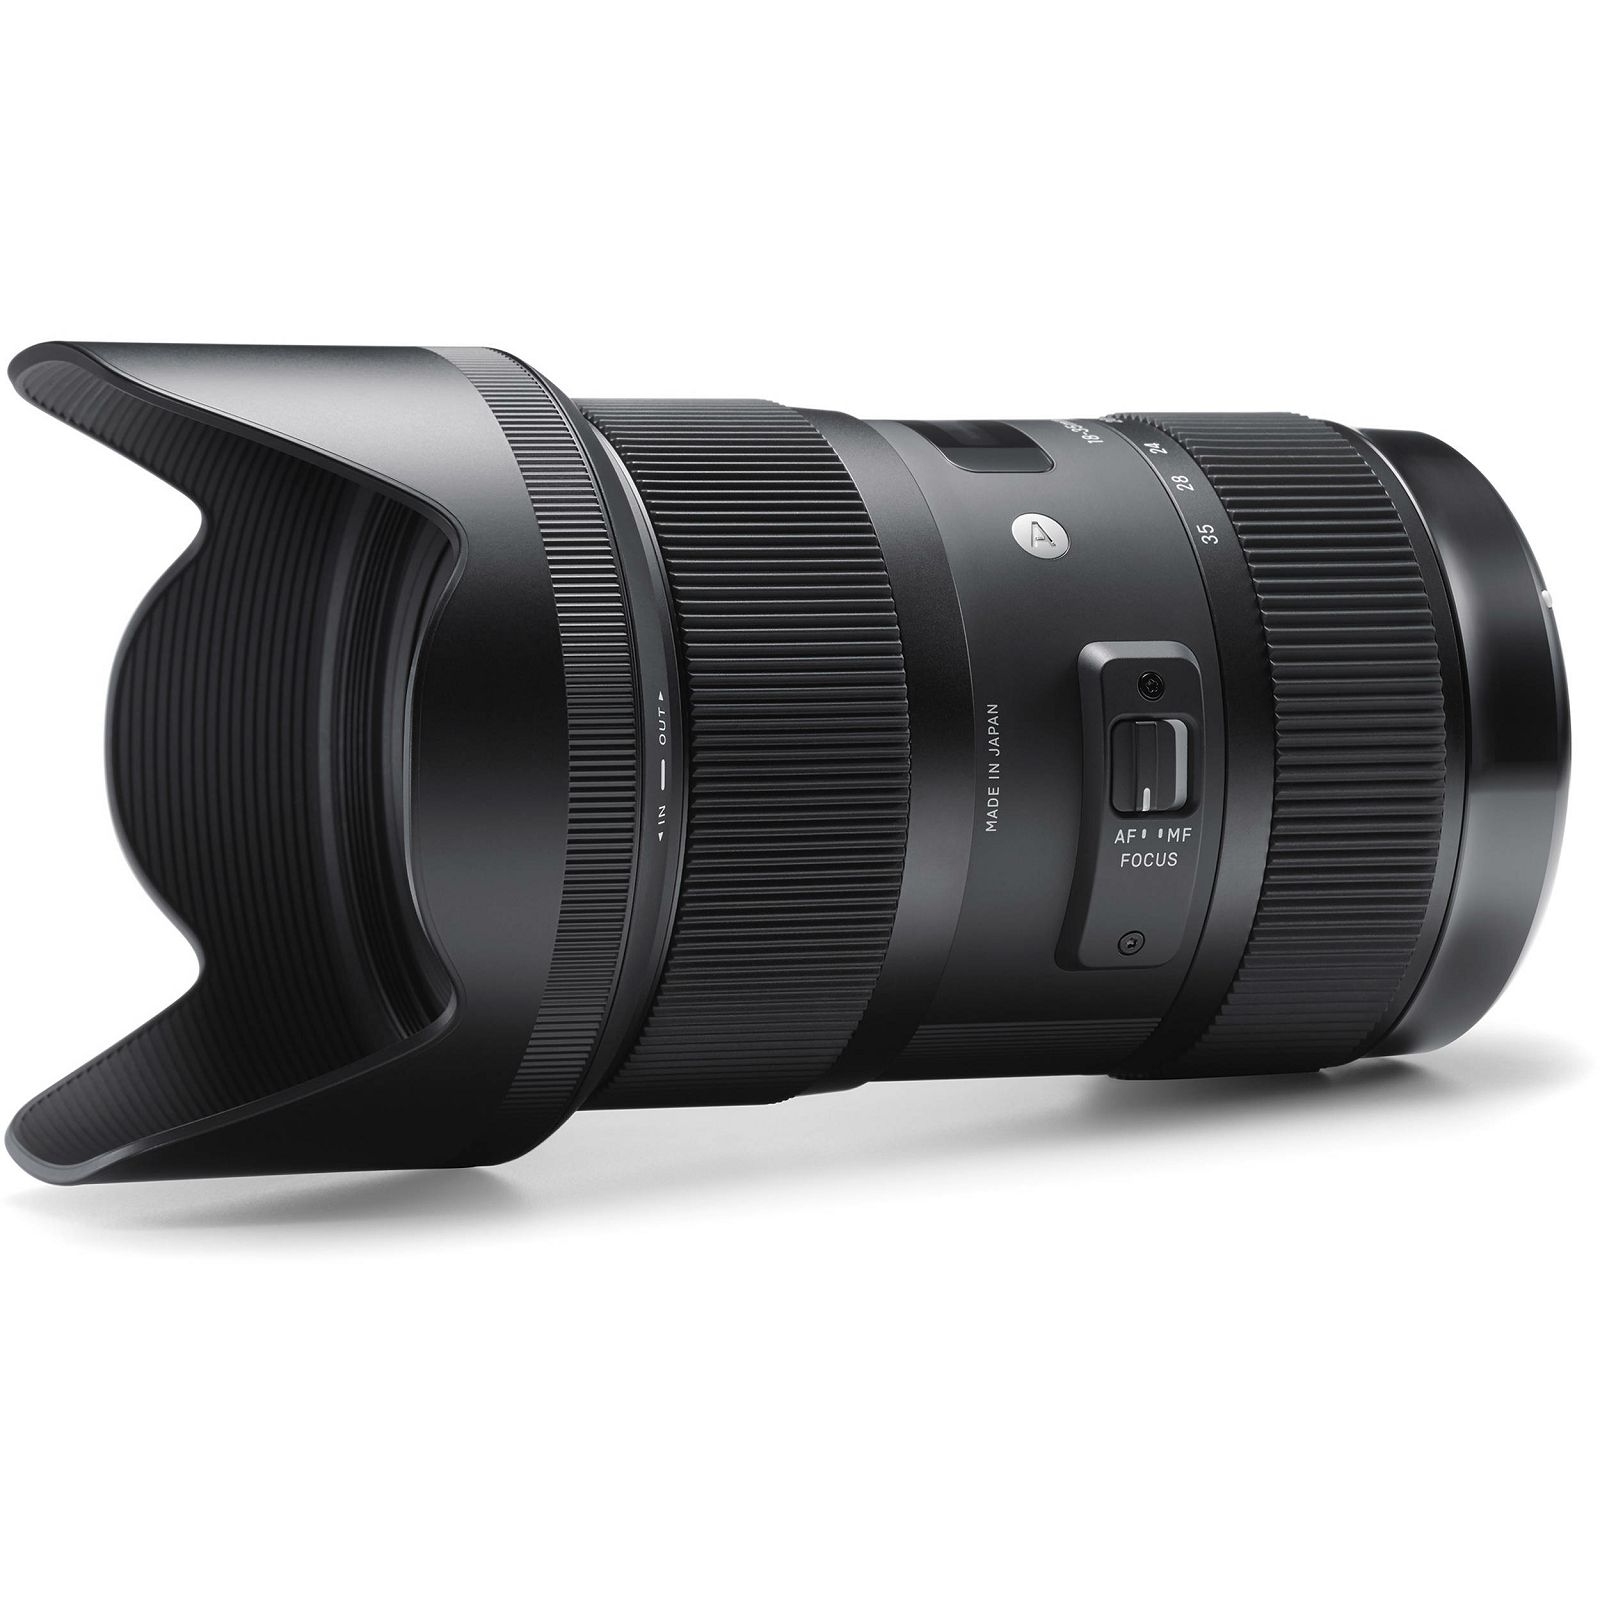 Sigma 18-35mm f/1.8 DC HSM ART širokokutni objektiv za Pentax 18-35 F/1,8 f1.8 wide angle zoom lens